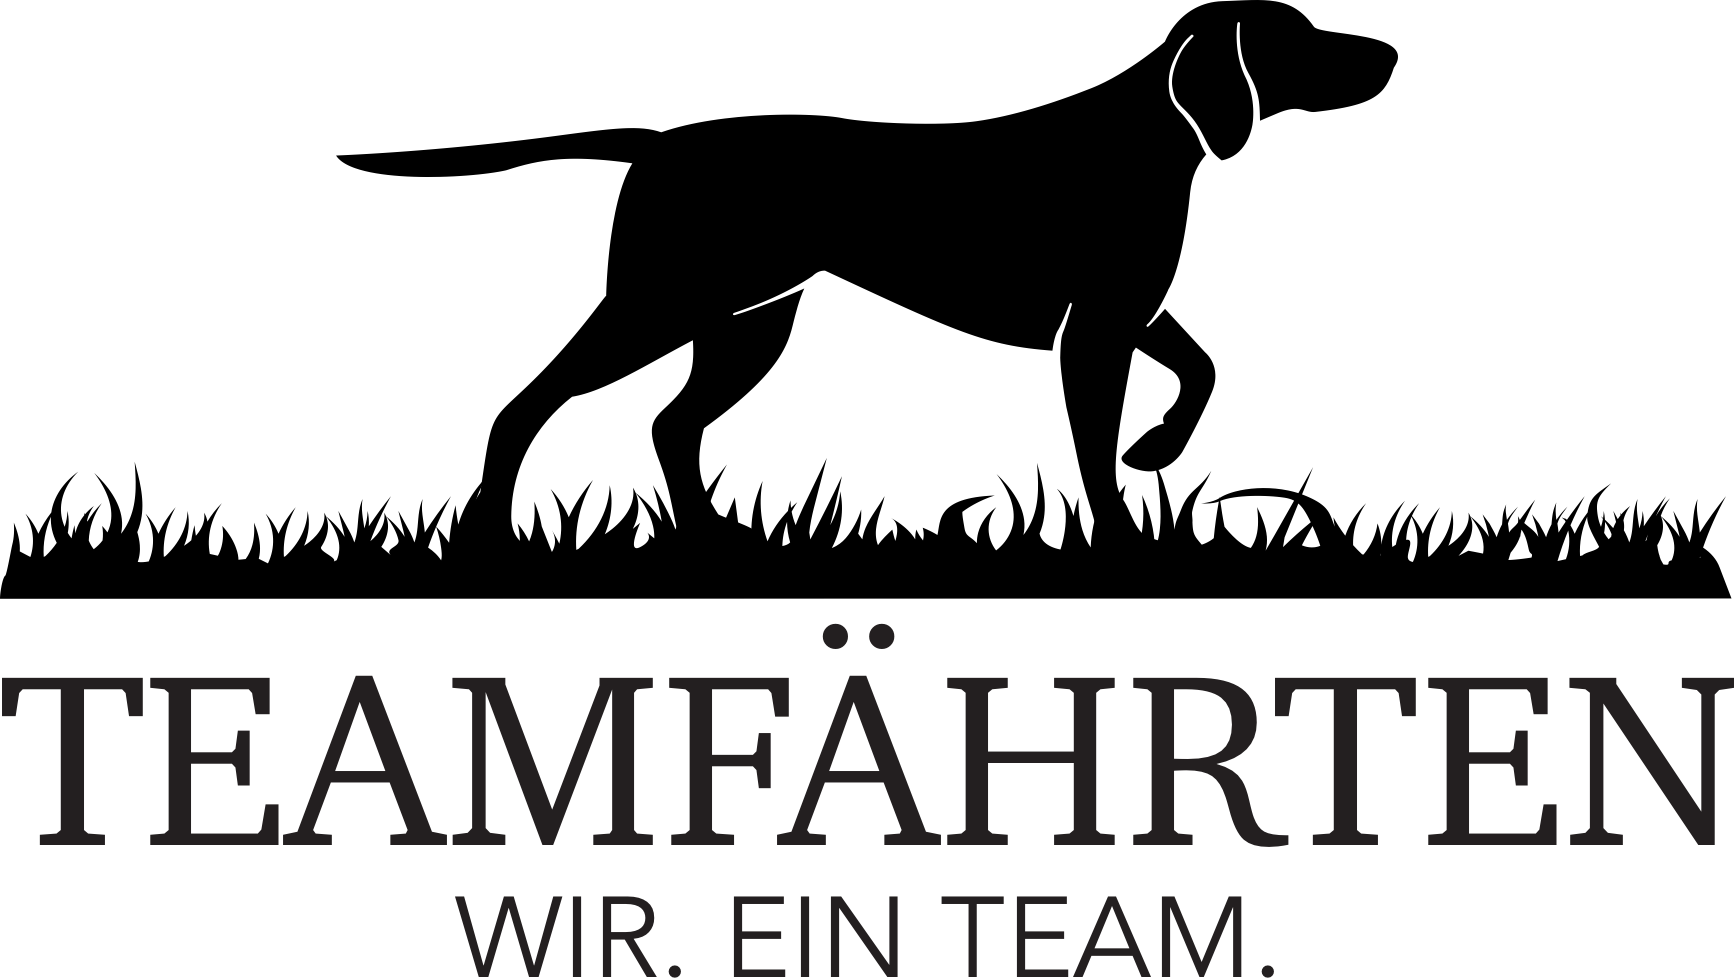 TEAM FÄHRTEN – WIR. EIN TEAM. Logo